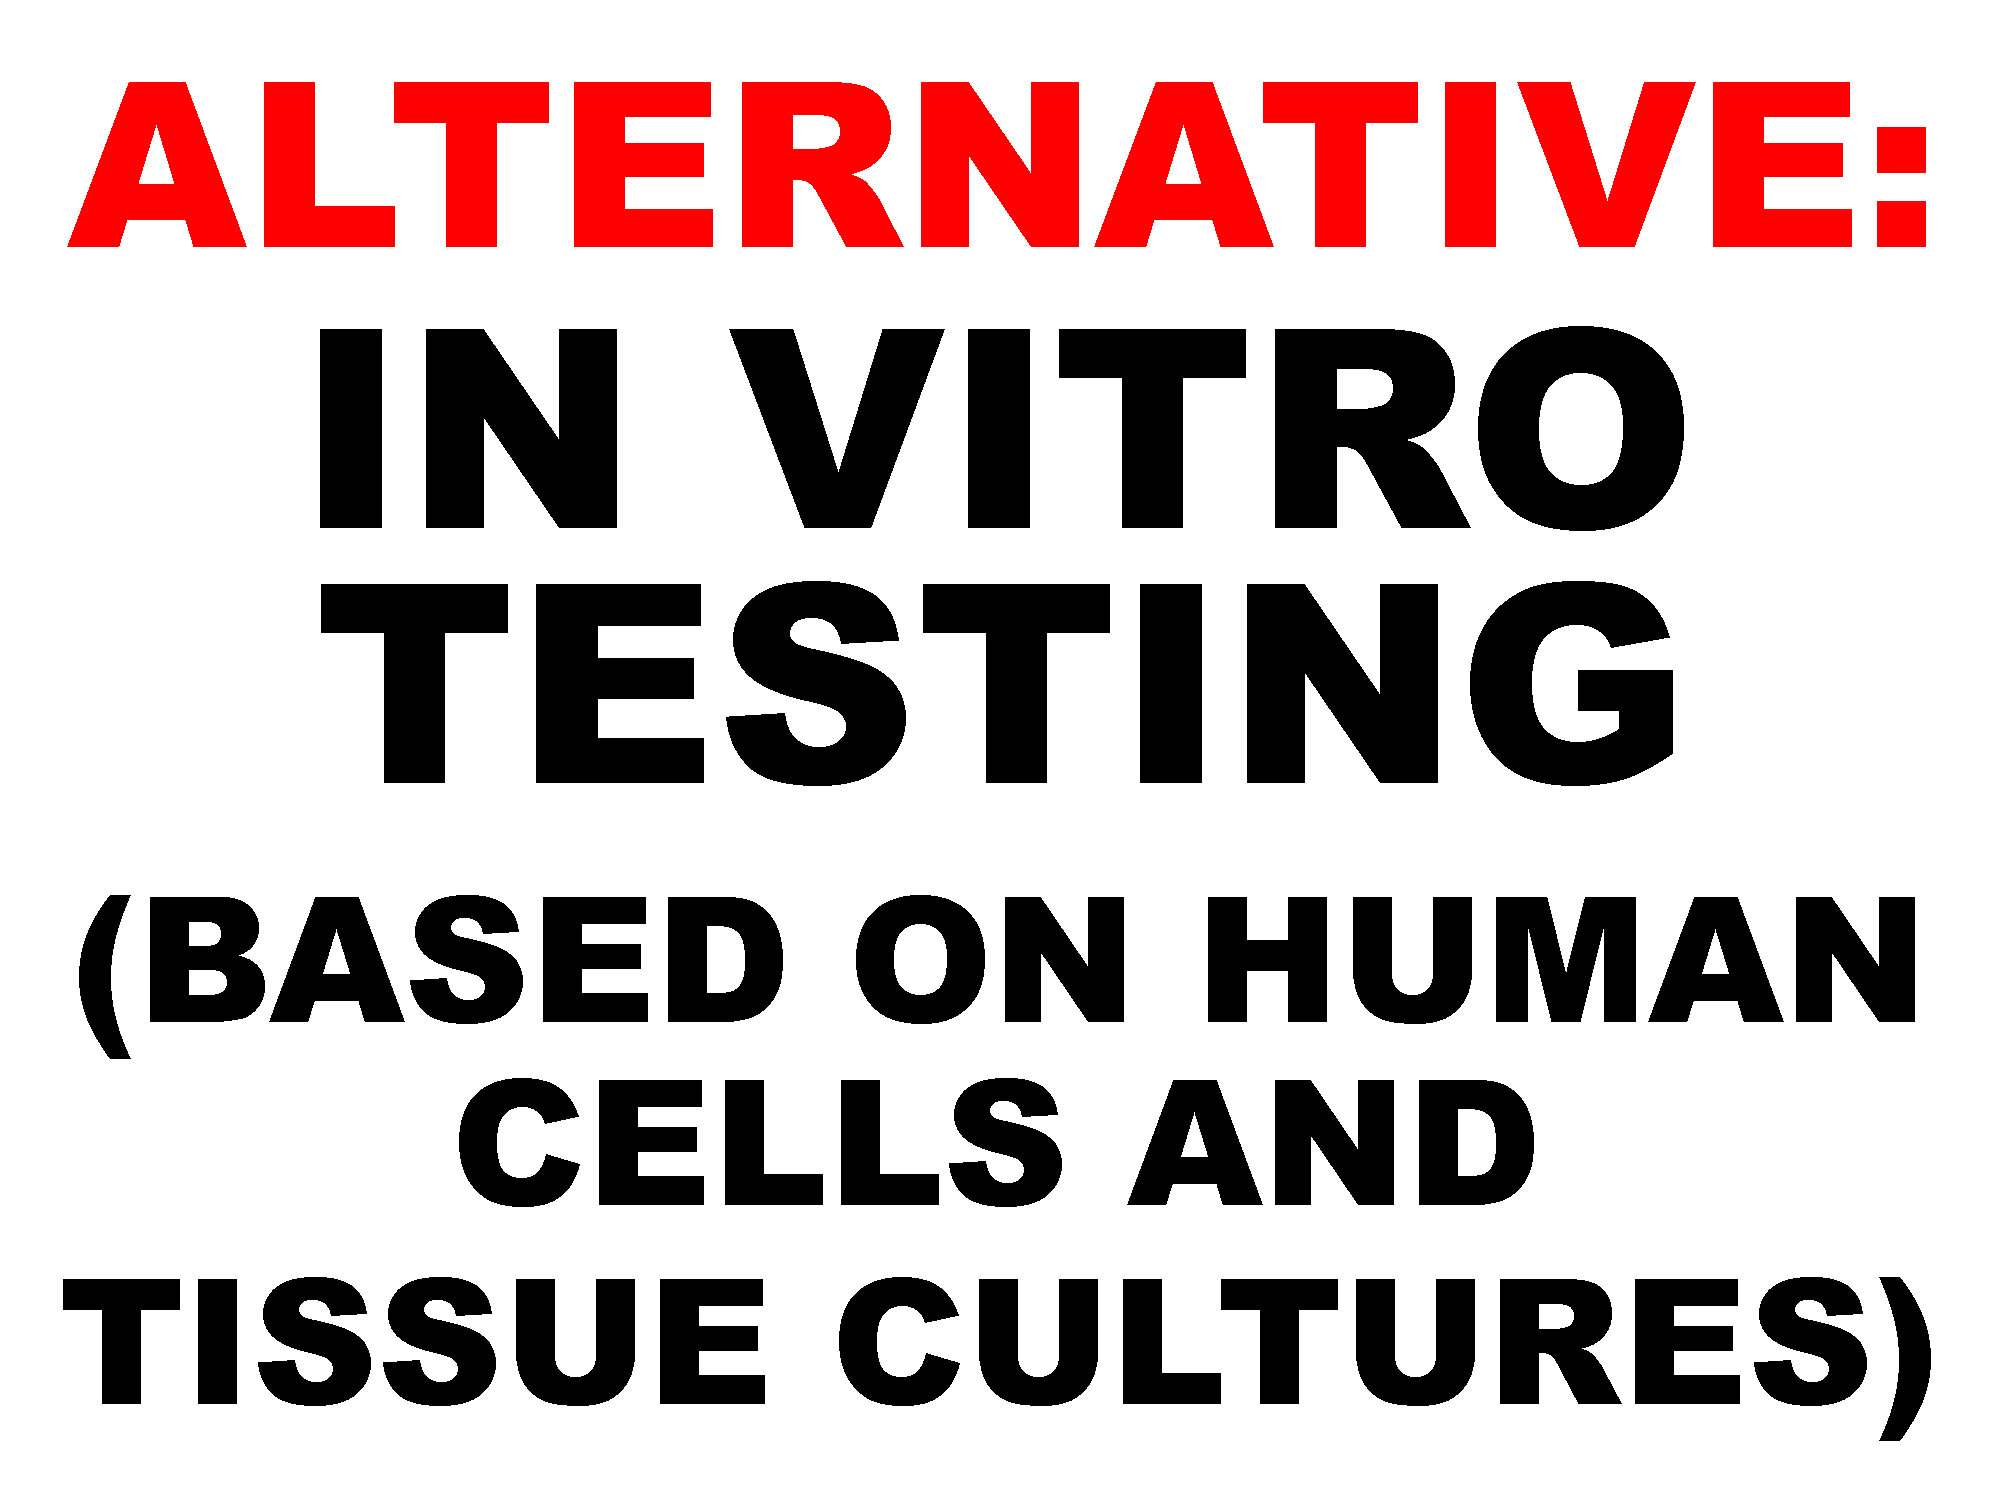 in vitro testing.jpg